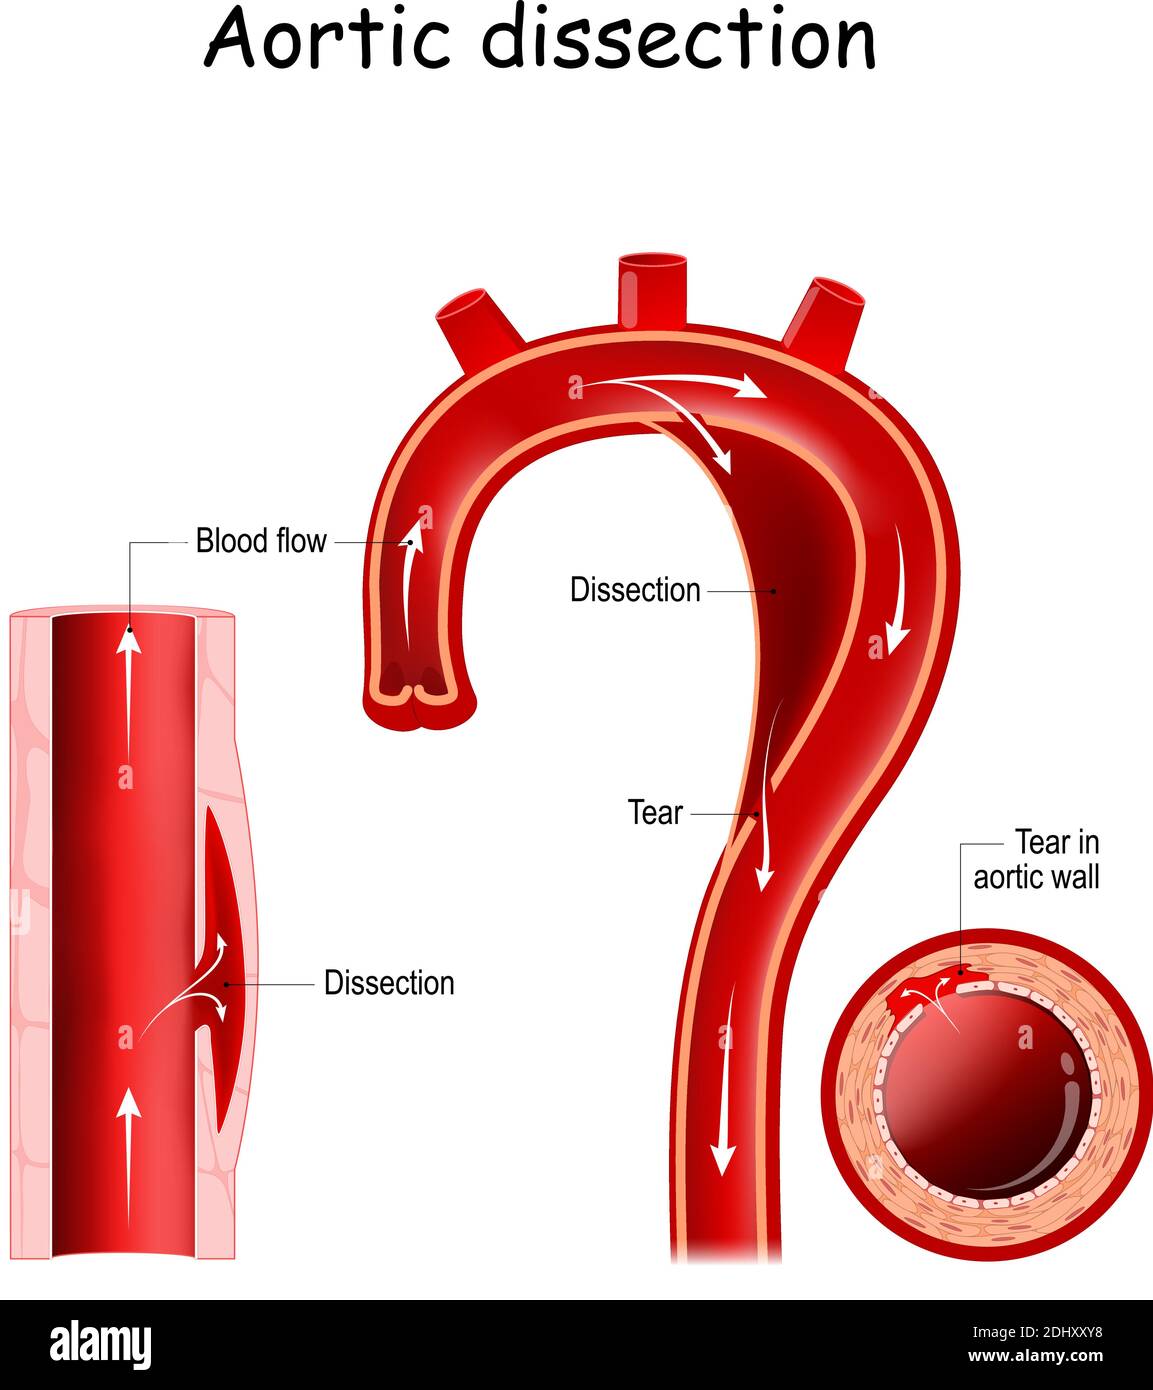 Aortendissektion. Verletzung der innersten Schicht der Aorta. Blut fließt zwischen den Schichten der Aortenwand. Aortenbogen Stock Vektor